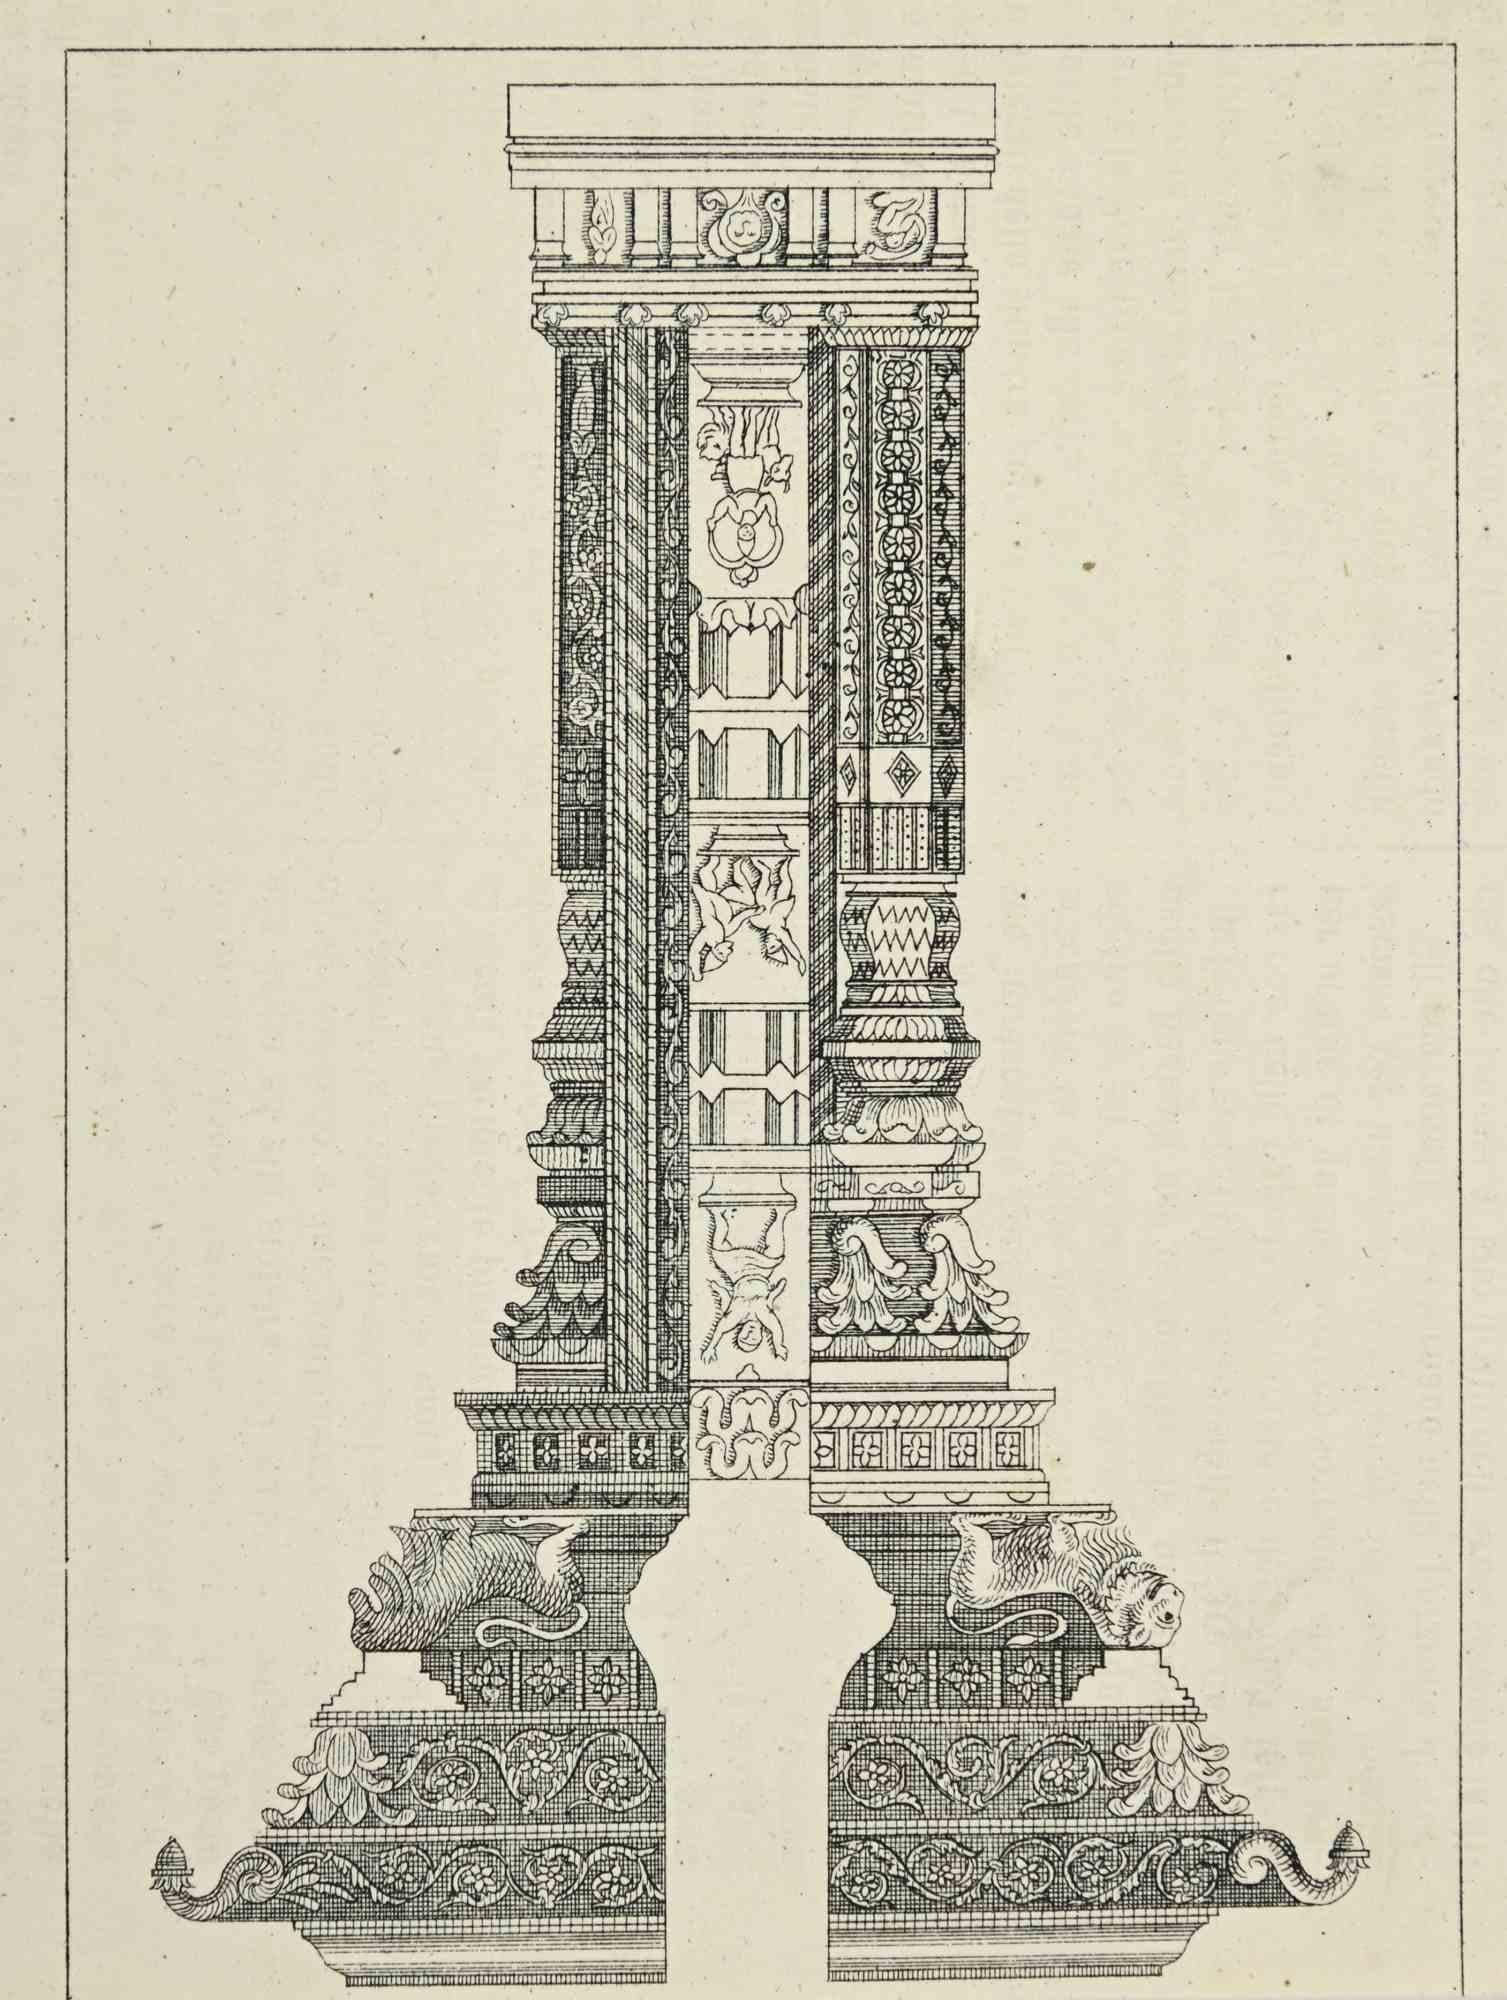 Unknown Figurative Print - Architectural Design - Lithograph - 1862